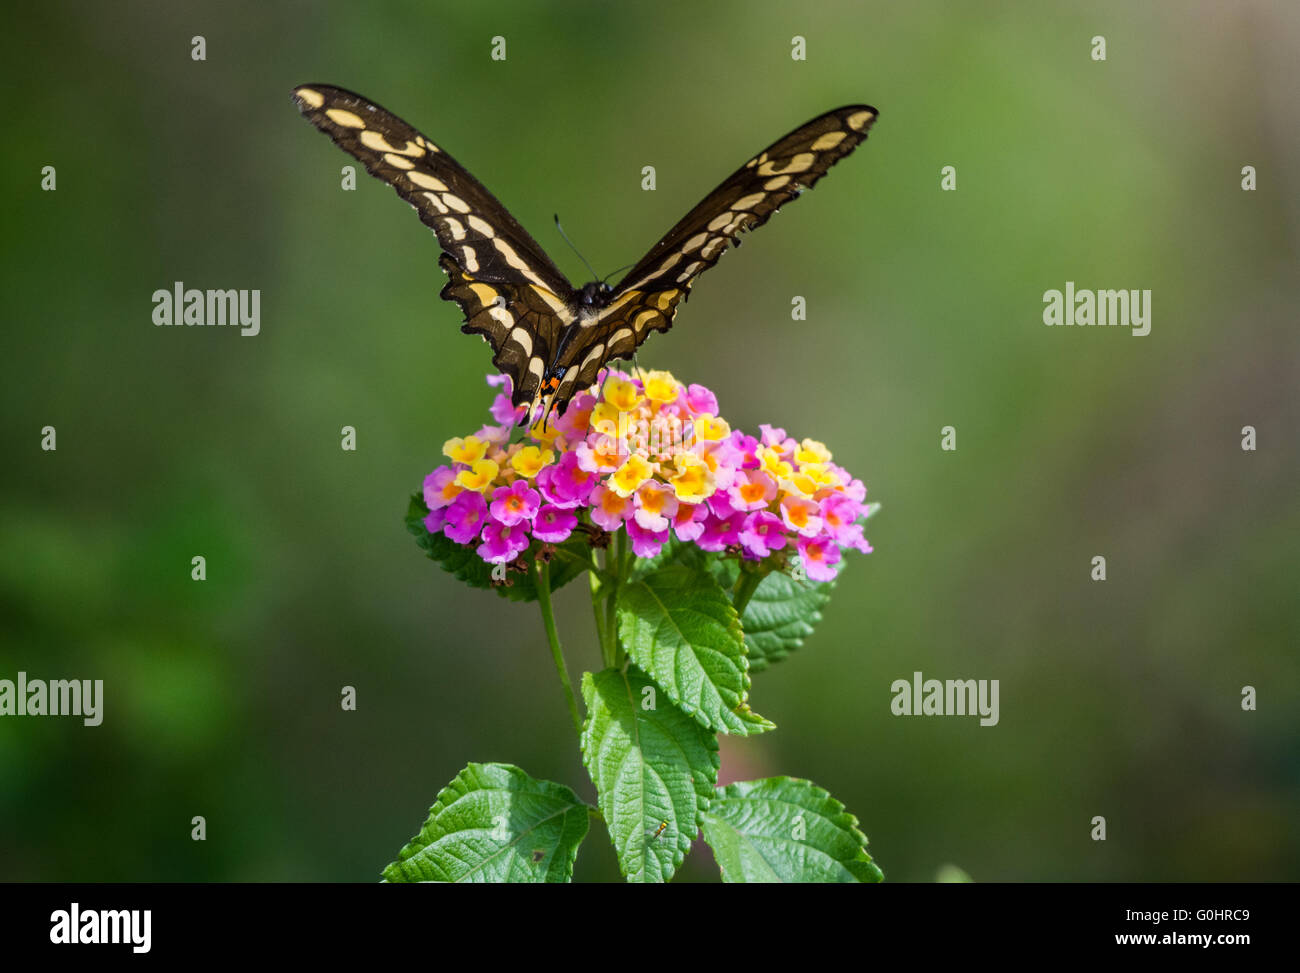 Un grand porte-queue (Papilio cresphontes) papillon danse autour de fleurs sauvages. Île haute, Texas, USA. Banque D'Images